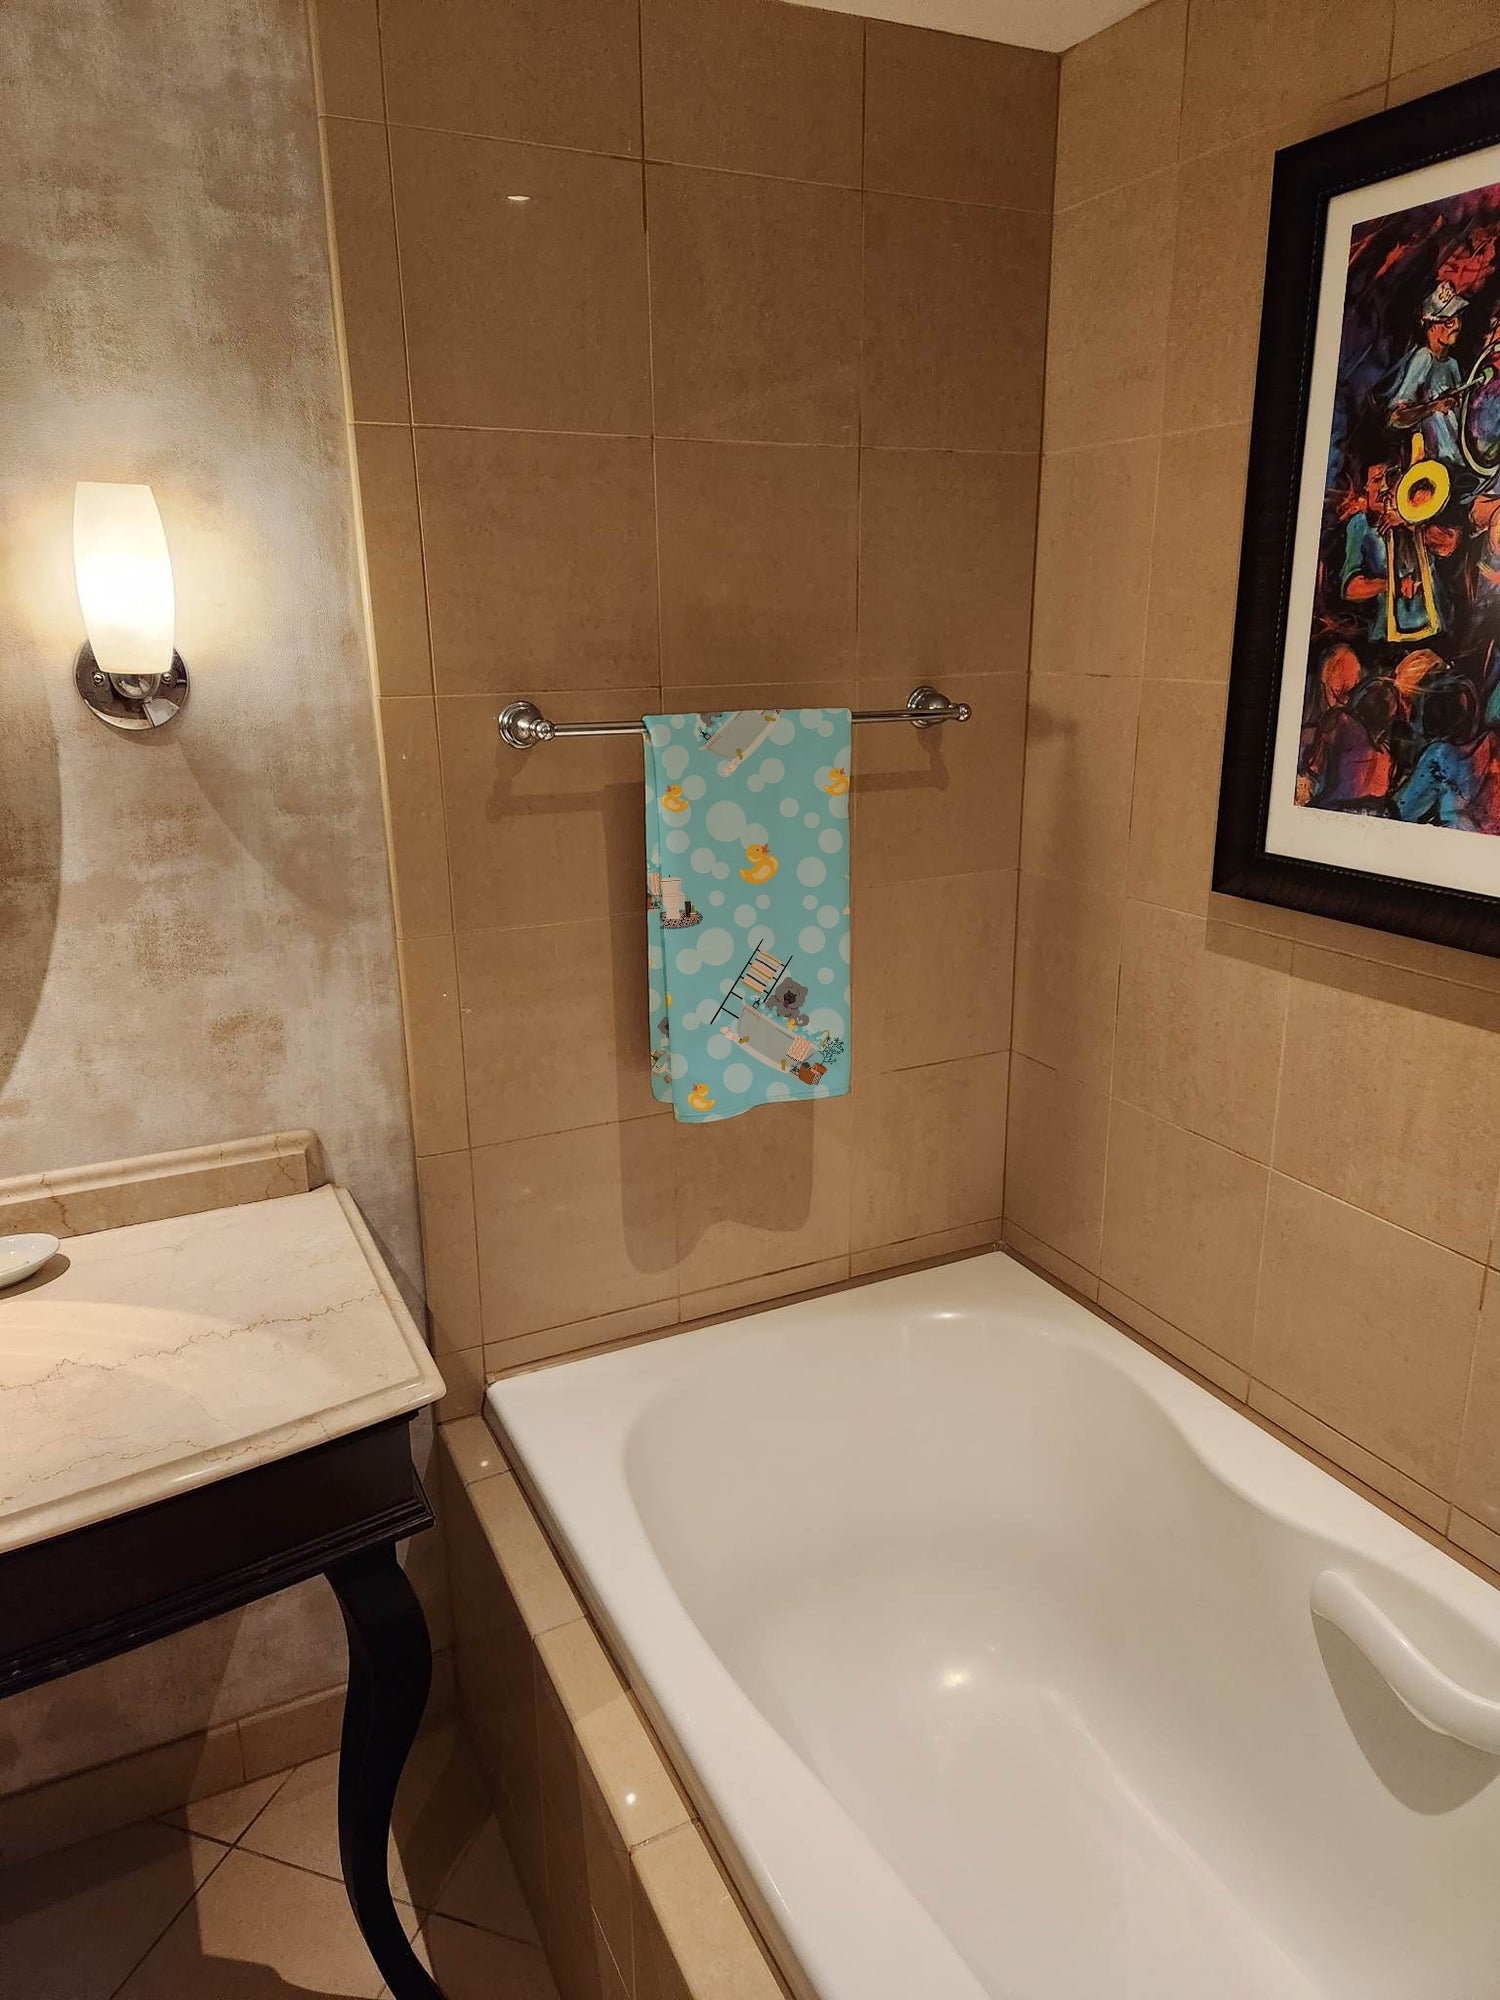 Blue Chow Chow in Bathtub Bath Towel Large